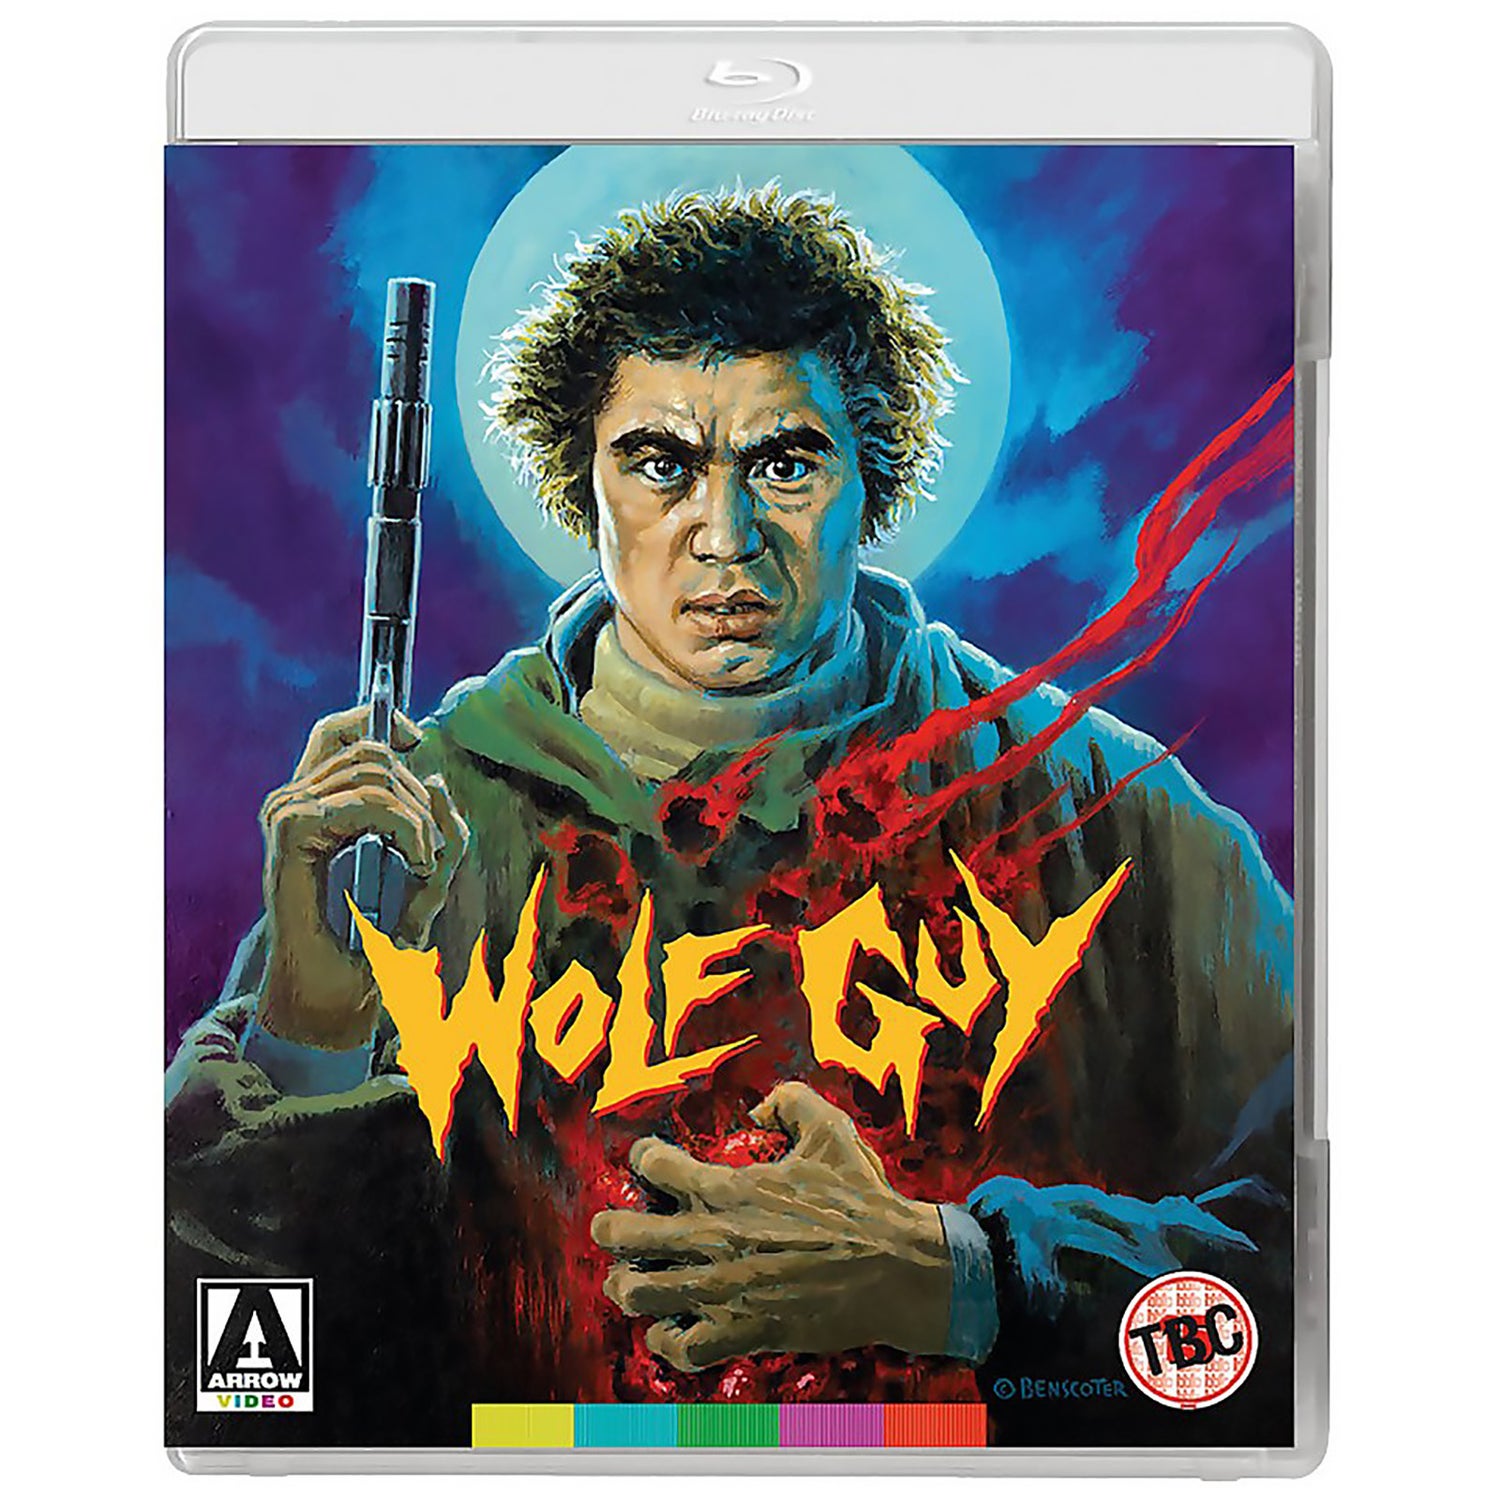 Wolfguy Blu-ray+DVD